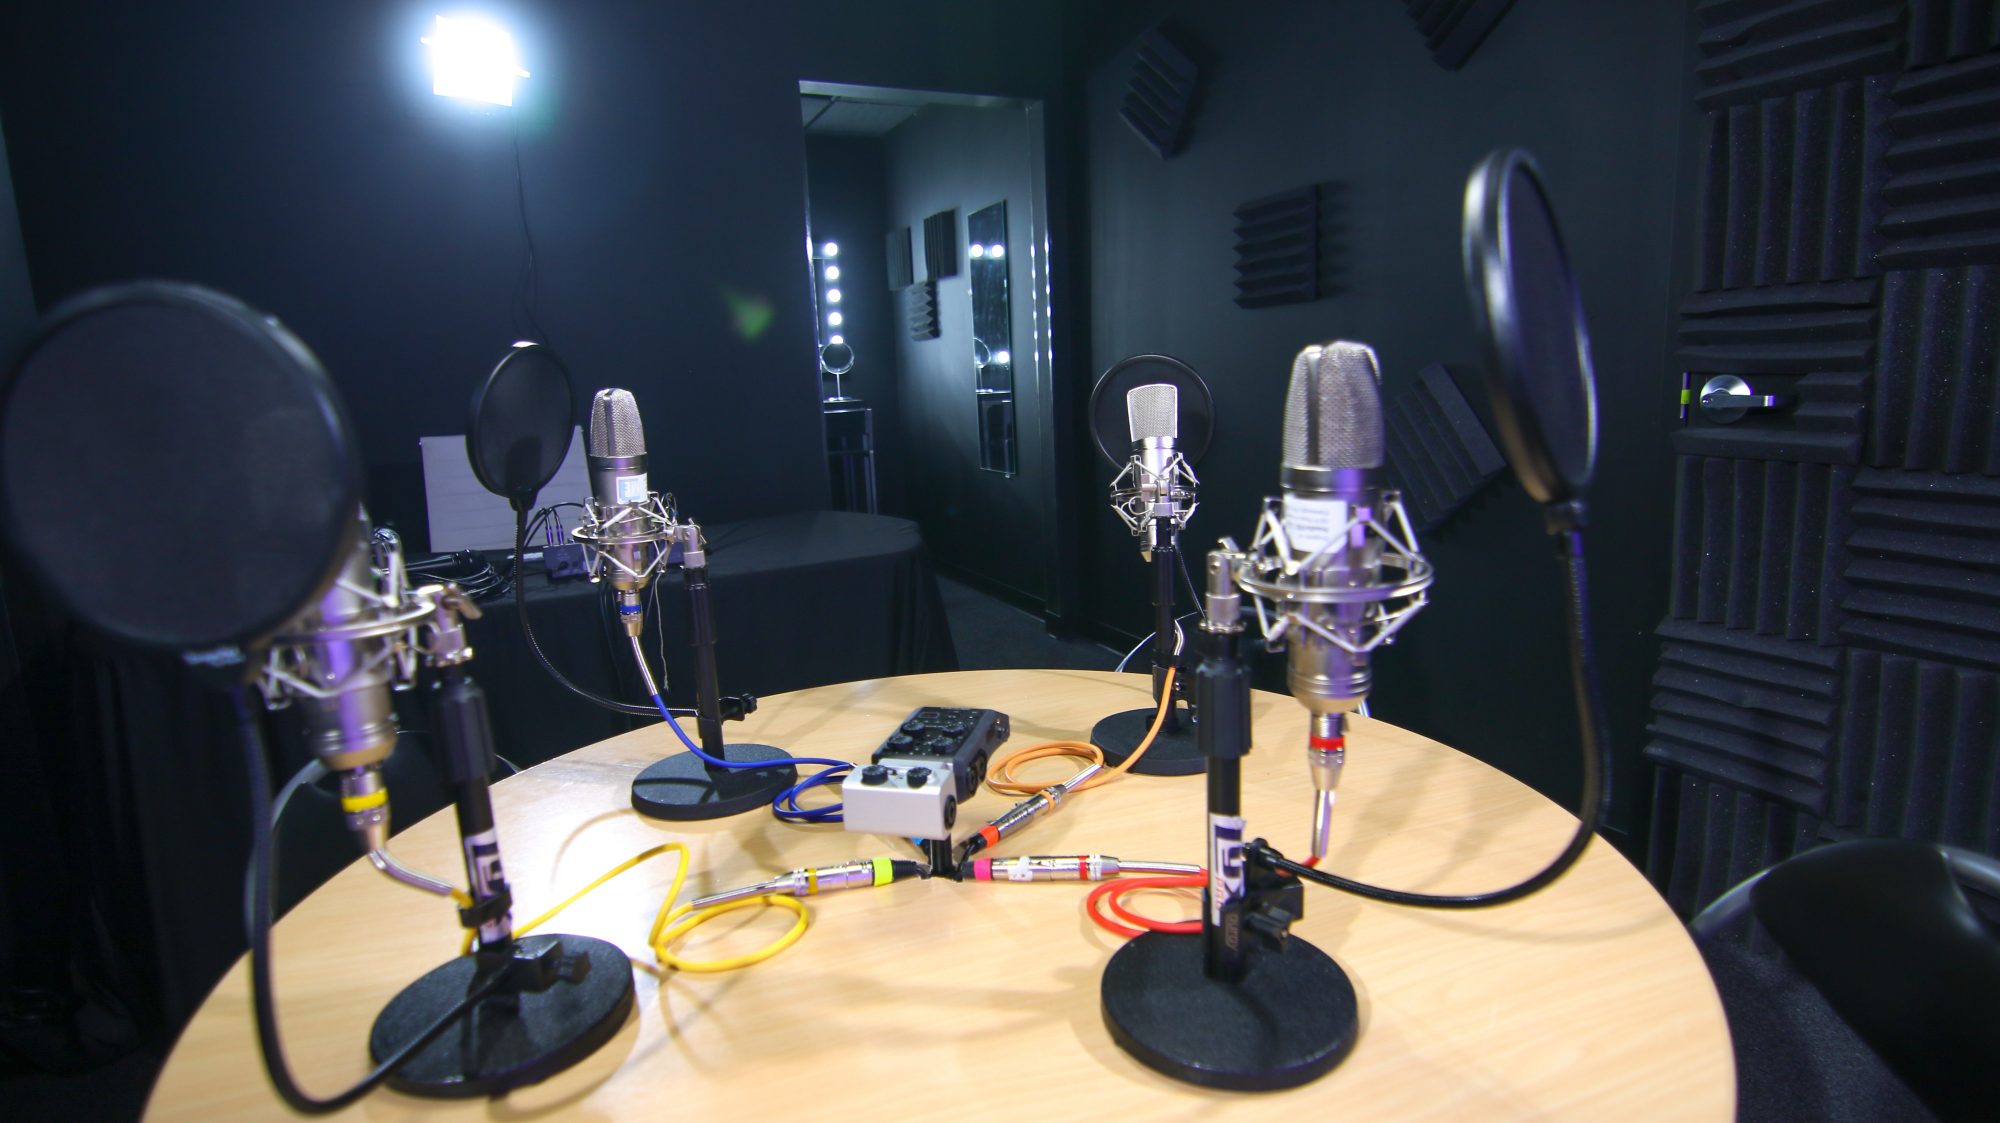 Сделай радио поставь. Студийный конденсаторный микрофон professional v8. Микрофон в студии. Студия звукозаписи микрофон. Микрофон для звукозаписи.